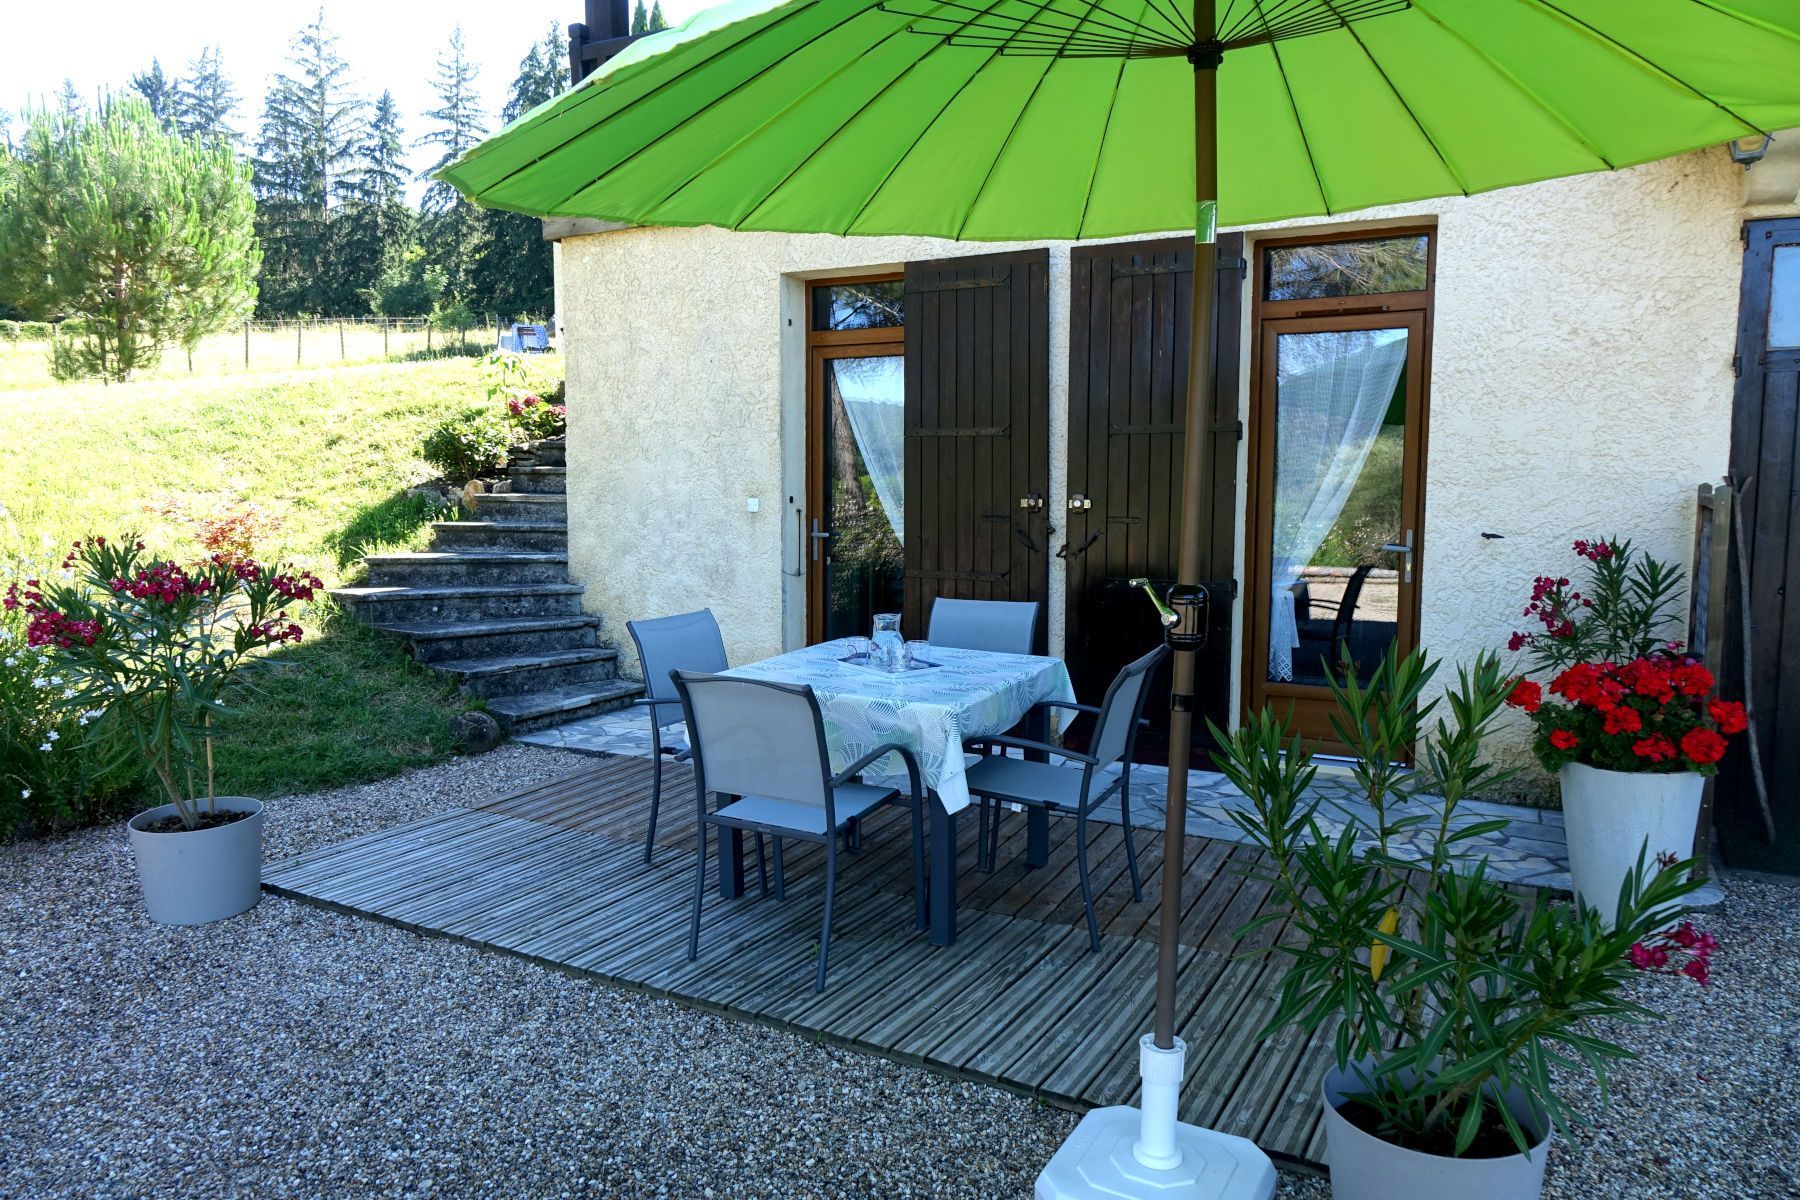 La casa rural (apartamento) vista de la terasa la sombrilla verde y la mesa cuadrada con las sillas